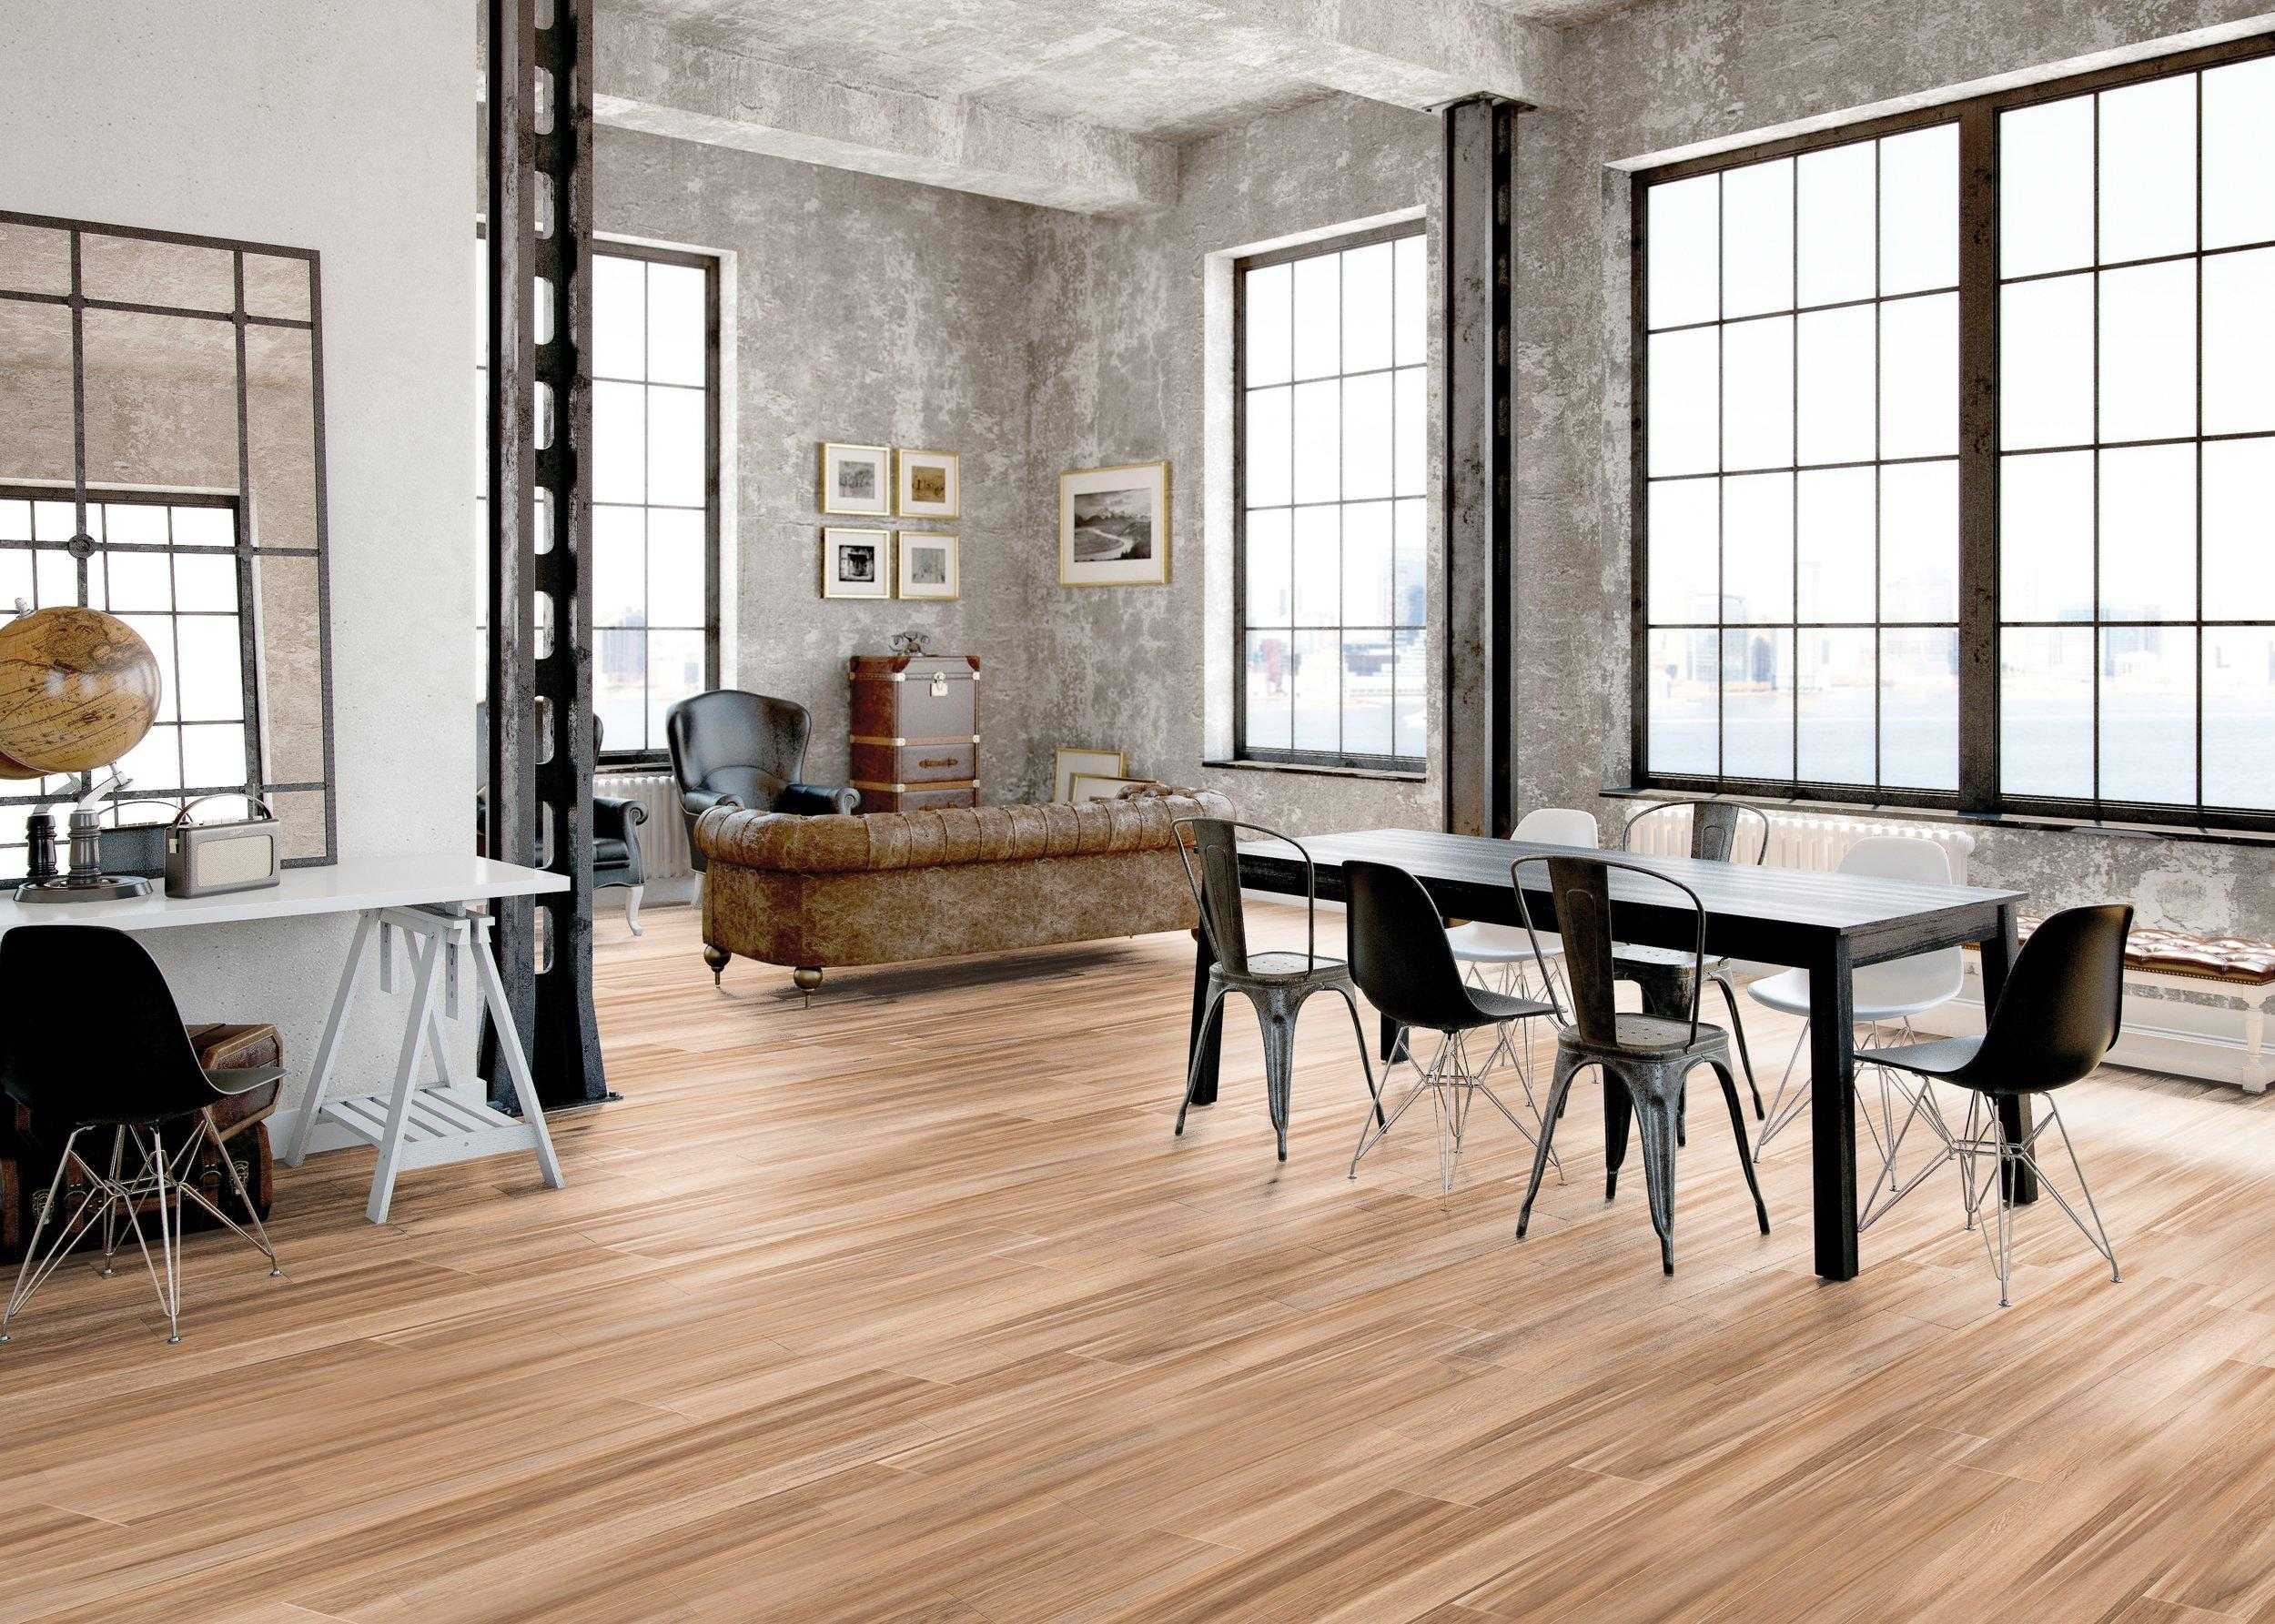 Sàn gỗ tự nhiên là loại vật liệu lát sàn được nhiều khách ưa chuộng và lựa chọn 